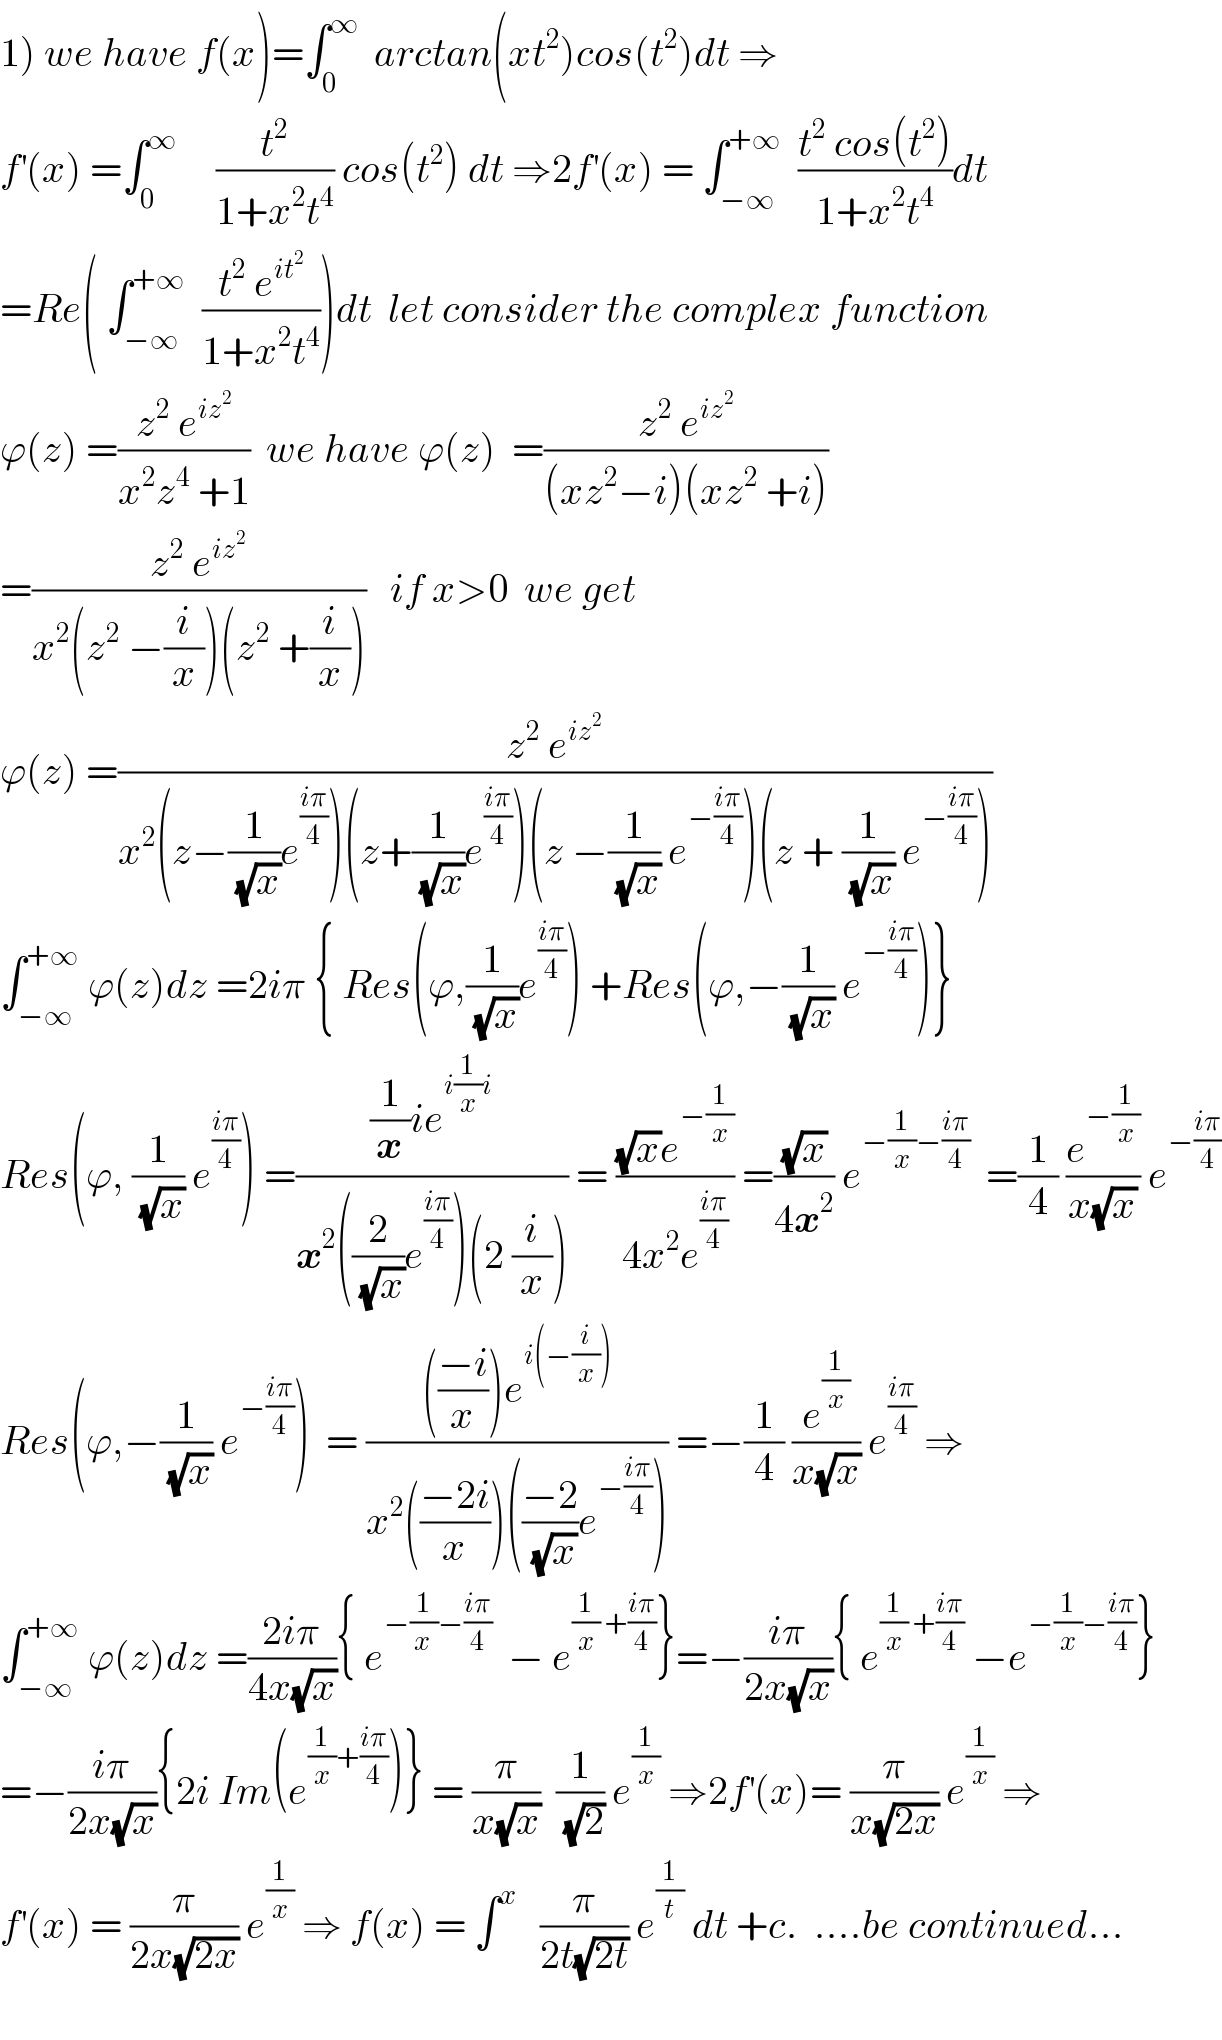 1) we have f(x)=∫_0 ^∞   arctan(xt^2 )cos(t^2 )dt ⇒  f^′ (x) =∫_0 ^∞      (t^2 /(1+x^2 t^4 )) cos(t^2 ) dt ⇒2f^′ (x) = ∫_(−∞) ^(+∞)   ((t^2  cos(t^2 ))/(1+x^2 t^4 ))dt  =Re( ∫_(−∞) ^(+∞)   ((t^2  e^(it^2 ) )/(1+x^2 t^4 )))dt  let consider the complex function  ϕ(z) =((z^2  e^(iz^2 ) )/(x^2 z^4  +1))  we have ϕ(z)  =((z^2  e^(iz^2 ) )/((xz^2 −i)(xz^2  +i)))  =((z^2  e^(iz^2 ) )/(x^2 (z^2  −(i/x))(z^2  +(i/x))))   if x>0  we get   ϕ(z) =((z^2  e^(iz^2 ) )/(x^2 (z−(1/(√x))e^((iπ)/4) )(z+(1/(√x))e^((iπ)/4) )(z −(1/(√x)) e^(−((iπ)/4)) )(z + (1/(√x)) e^(−((iπ)/4)) )))  ∫_(−∞) ^(+∞)  ϕ(z)dz =2iπ { Res(ϕ,(1/(√x))e^((iπ)/4) ) +Res(ϕ,−(1/(√x)) e^(−((iπ)/4)) )}  Res(ϕ, (1/(√x)) e^((iπ)/4) ) =(((1/x)ie^(i(1/x)i) )/(x^2 ((2/(√x))e^((iπ)/4) )(2 (i/x)))) = (((√x)e^(−(1/x)) )/(4x^2 e^((iπ)/4) )) =((√x)/(4x^2 )) e^(−(1/x)−((iπ)/4))   =(1/4) (e^(−(1/x)) /(x(√x))) e^(−((iπ)/4))   Res(ϕ,−(1/(√x)) e^(−((iπ)/4)) )  = (((((−i)/x))e^(i(−(i/x))) )/(x^2 (((−2i)/x))(((−2)/(√x))e^(−((iπ)/4)) ))) =−(1/4) (e^(1/x) /(x(√x))) e^((iπ)/4)  ⇒  ∫_(−∞) ^(+∞)  ϕ(z)dz =((2iπ)/(4x(√x))){ e^(−(1/(x ))−((iπ)/4))   − e^((1/x) +((iπ)/4)) }=−((iπ)/(2x(√x))){ e^((1/x) +((iπ)/4))  −e^(−(1/x)−((iπ)/4)) }  =−((iπ)/(2x(√x))){2i Im(e^((1/x)+((iπ)/4)) )} = (π/(x(√x)))  (1/(√2)) e^(1/x)  ⇒2f^′ (x)= (π/(x(√(2x)))) e^(1/x)  ⇒  f^′ (x) = (π/(2x(√(2x)))) e^(1/x)  ⇒ f(x) = ∫^x    (π/(2t(√(2t)))) e^(1/t)  dt +c.  ....be continued...    